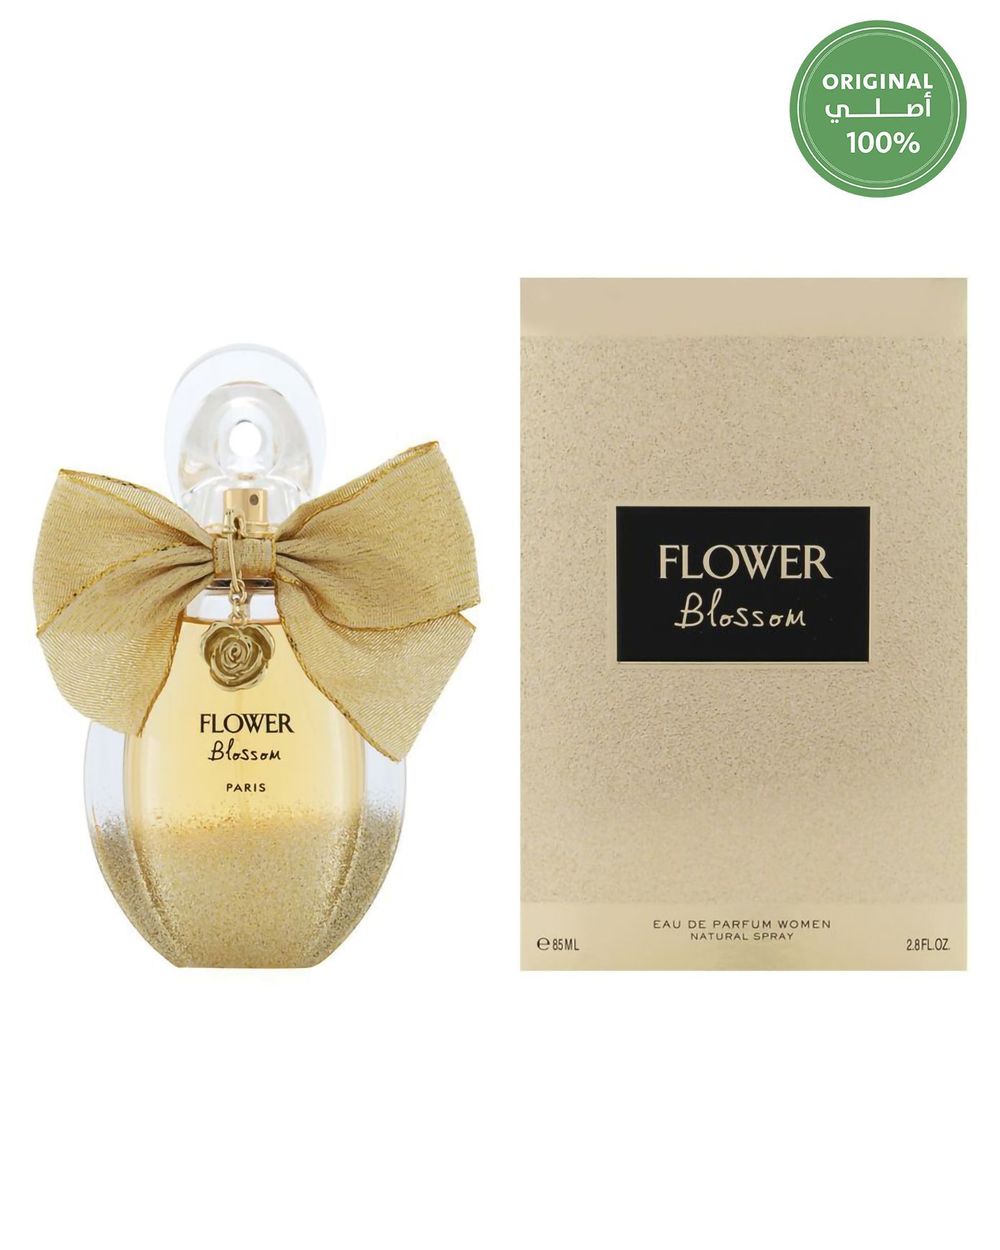 flower blossom perfume paris